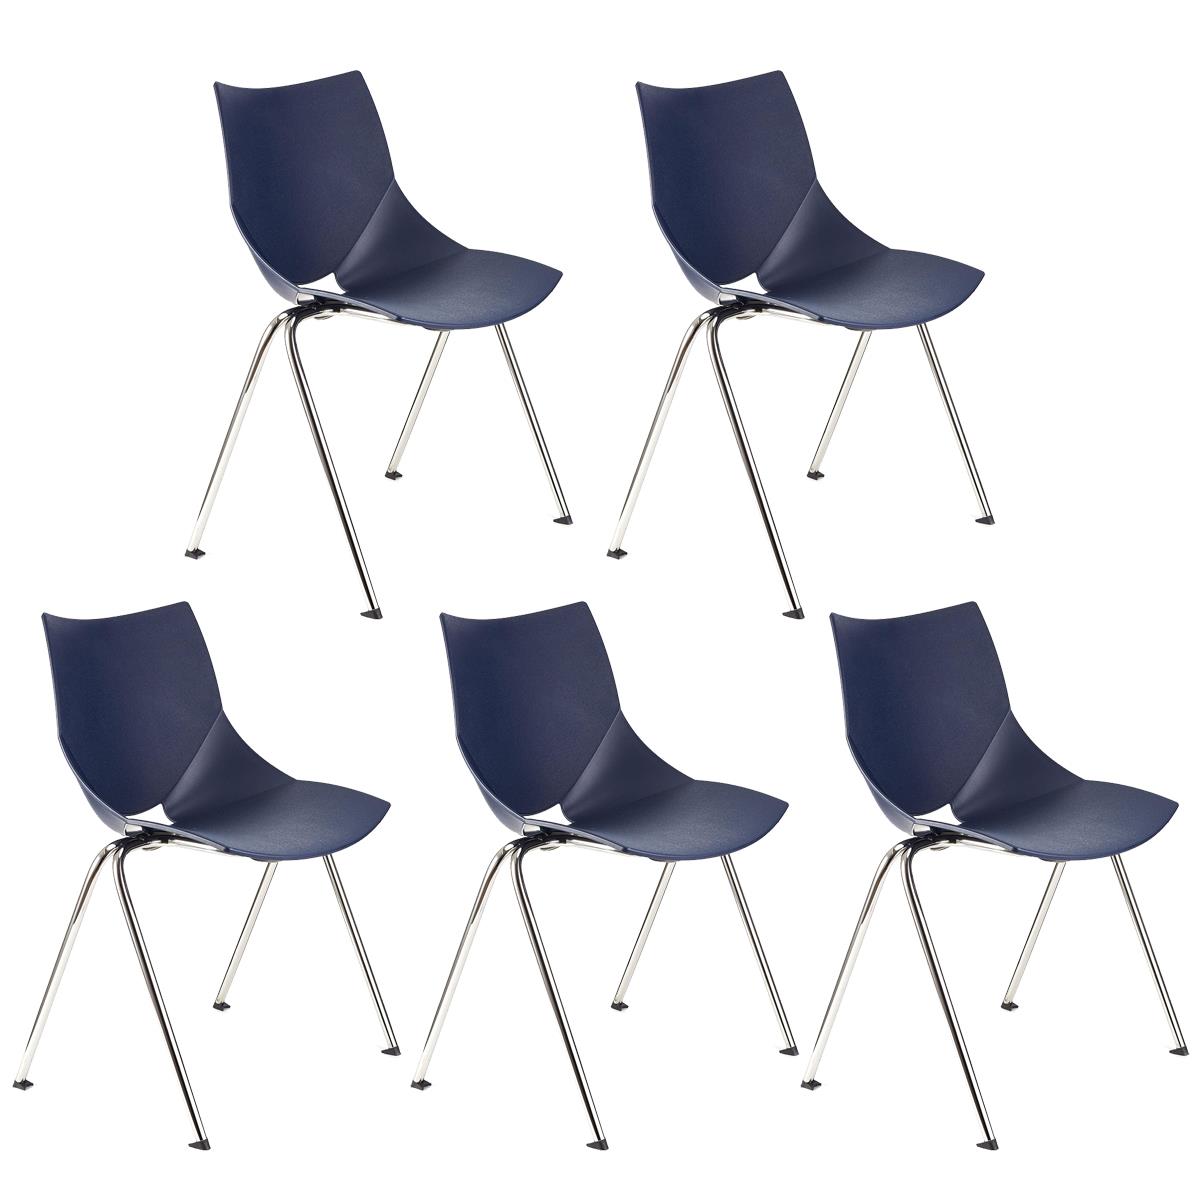 Lote 5 Cadeiras de Visita AMIR, Confortável e Prática, Empilhável, Cor Azul